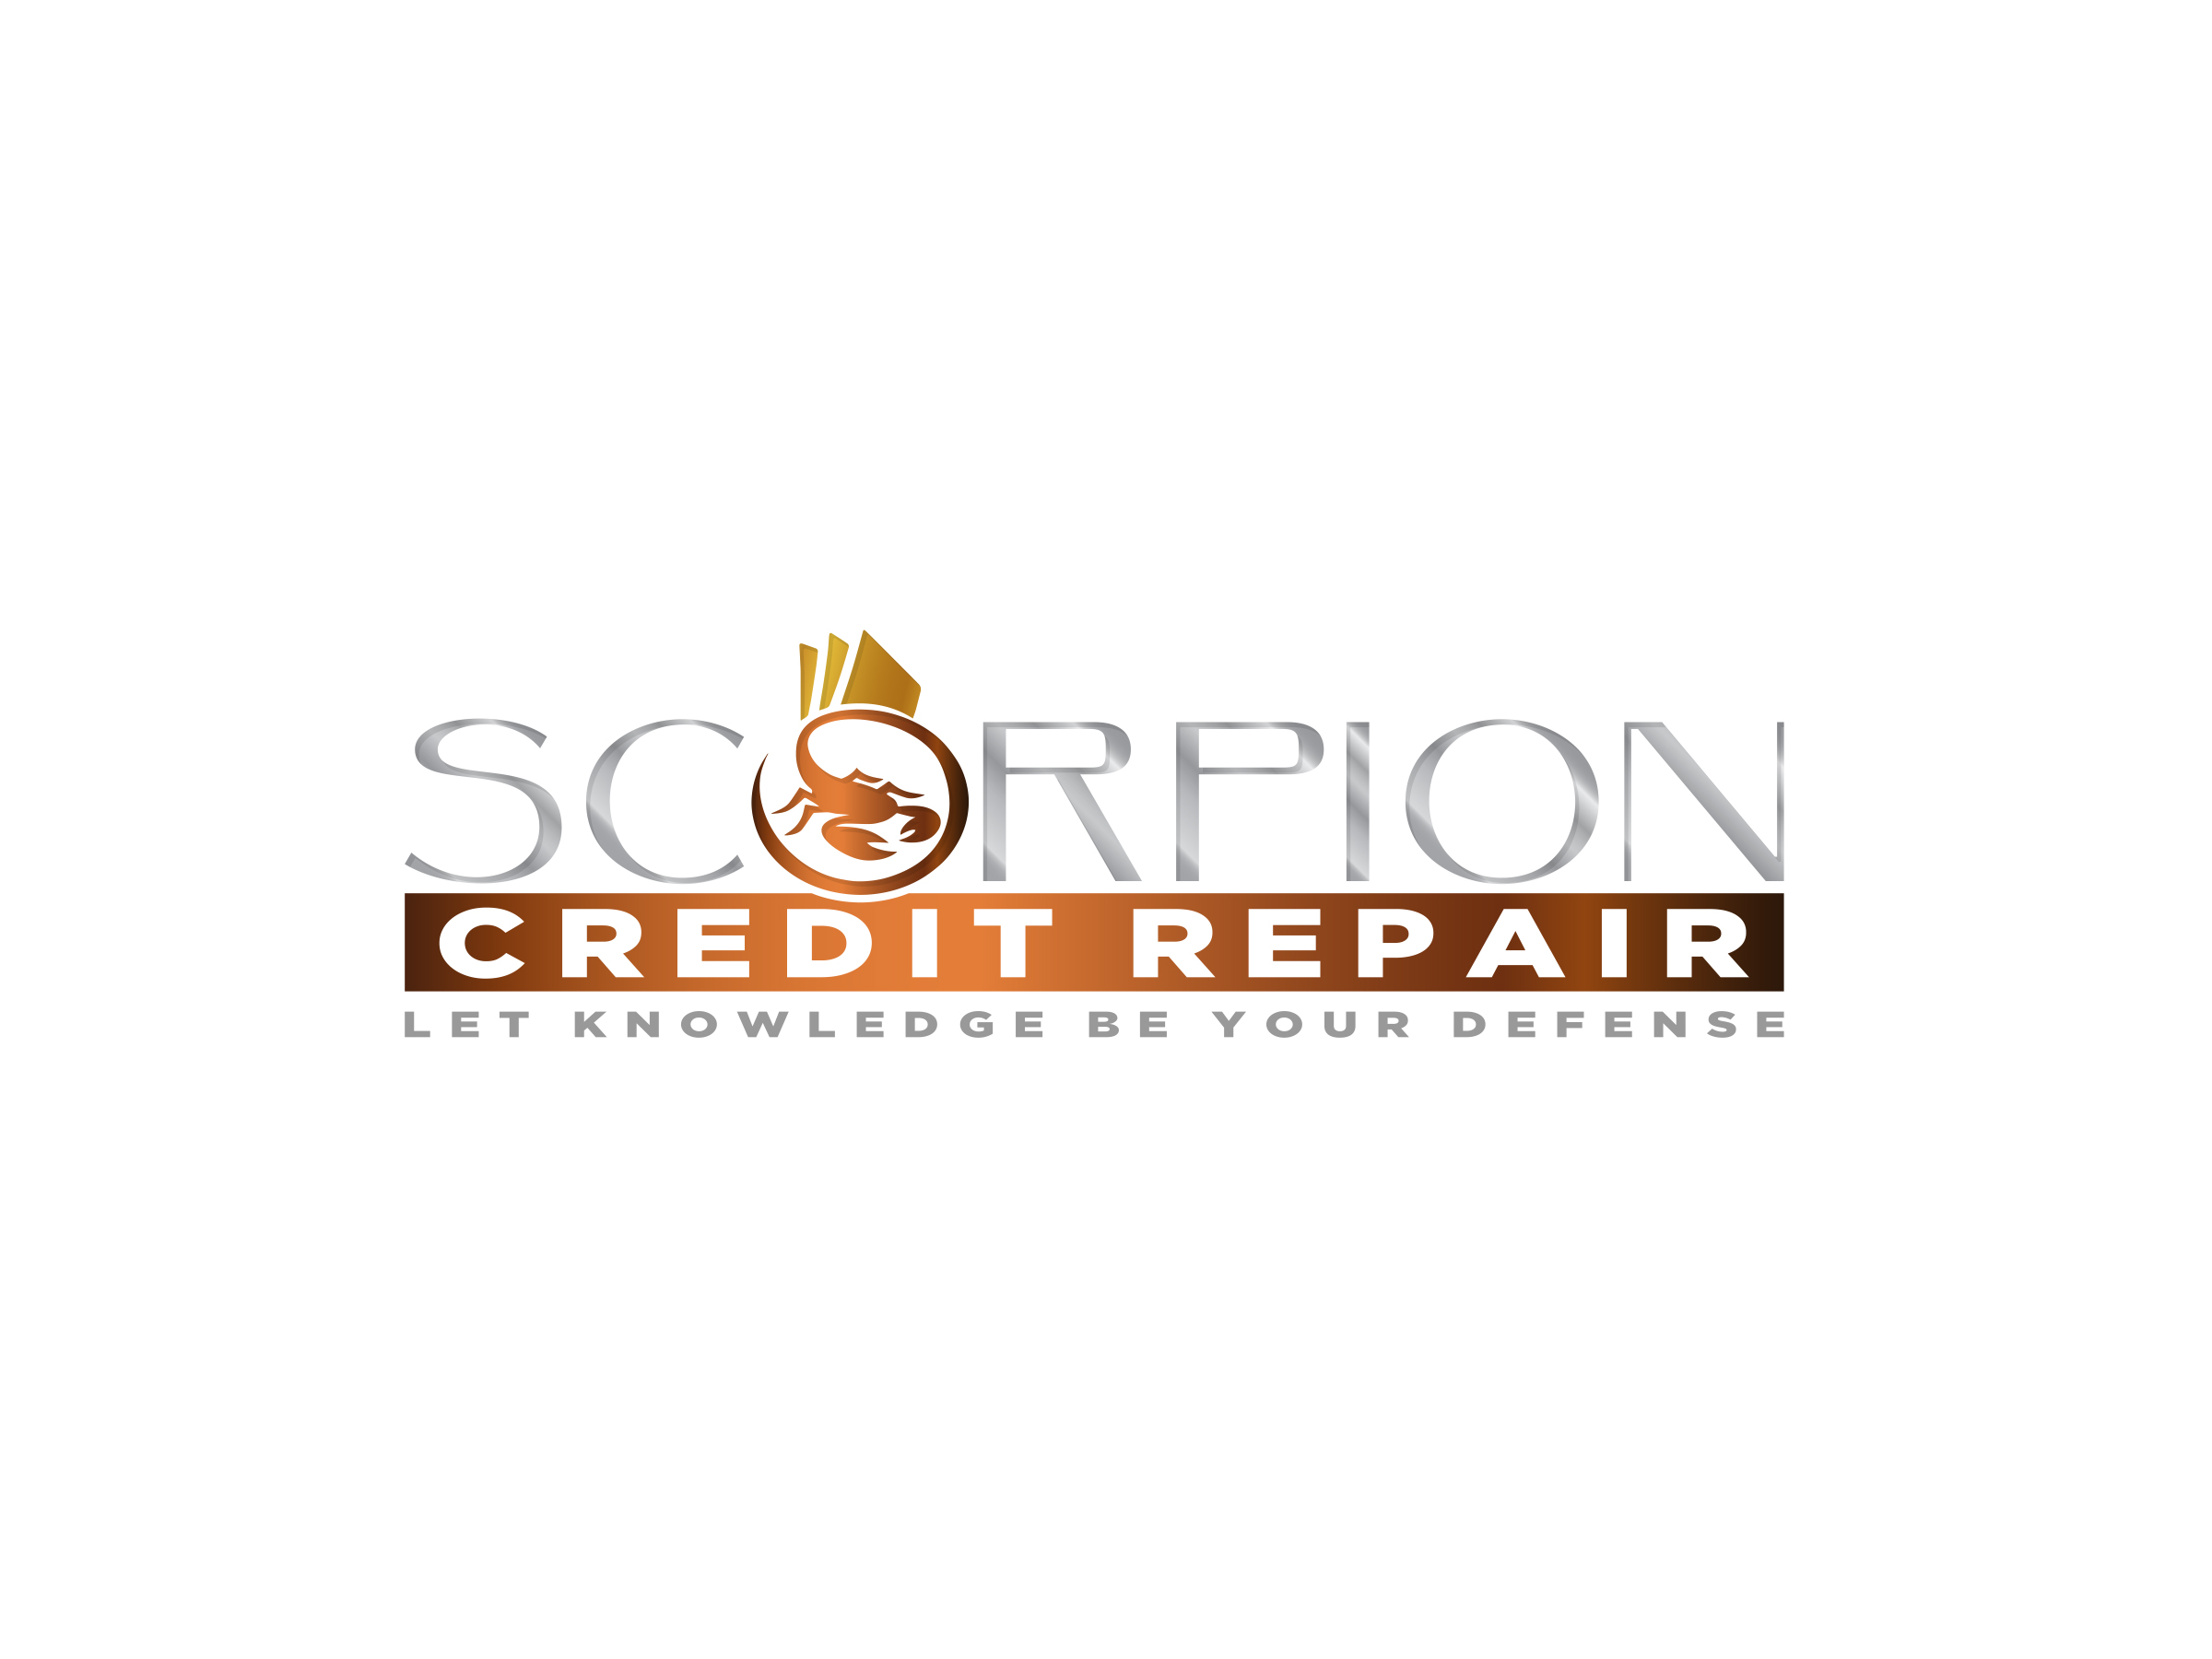 Scorpion Credit Repair